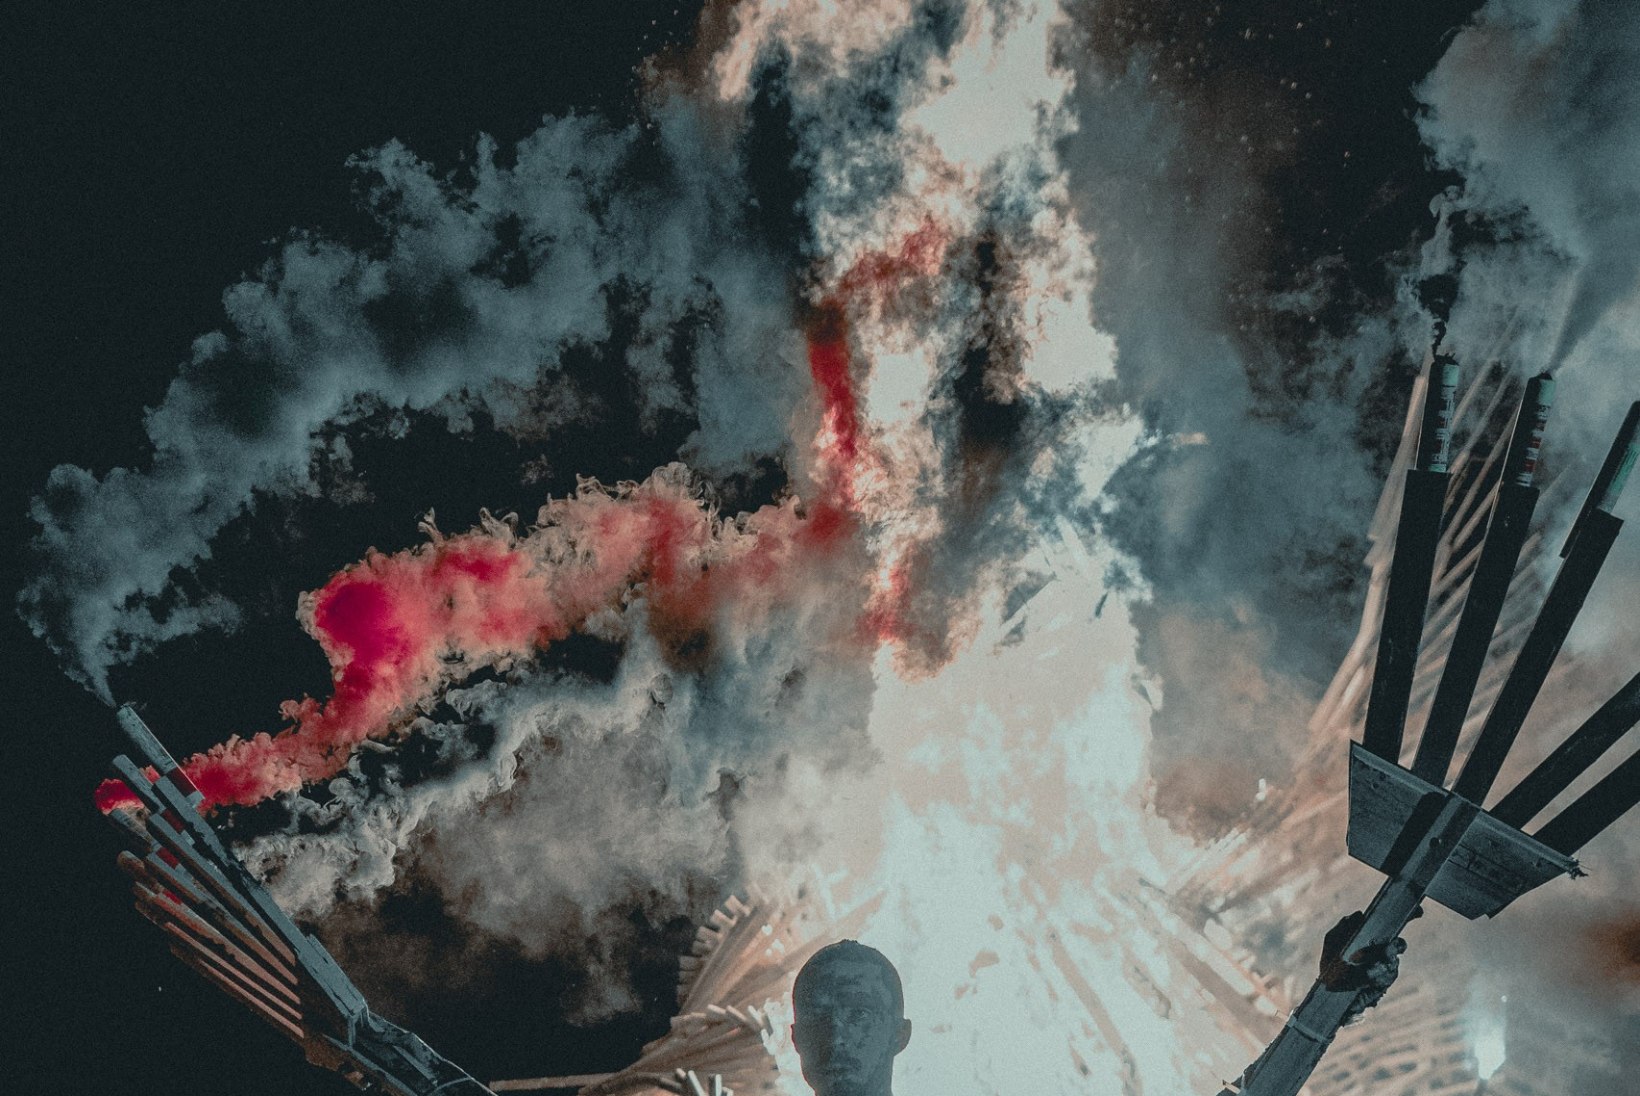 GALERII | PIDU NAGU VÄLISMAAL! Non Grata põletas Saaremaa muusikafestivalil hiigelfööniksi 